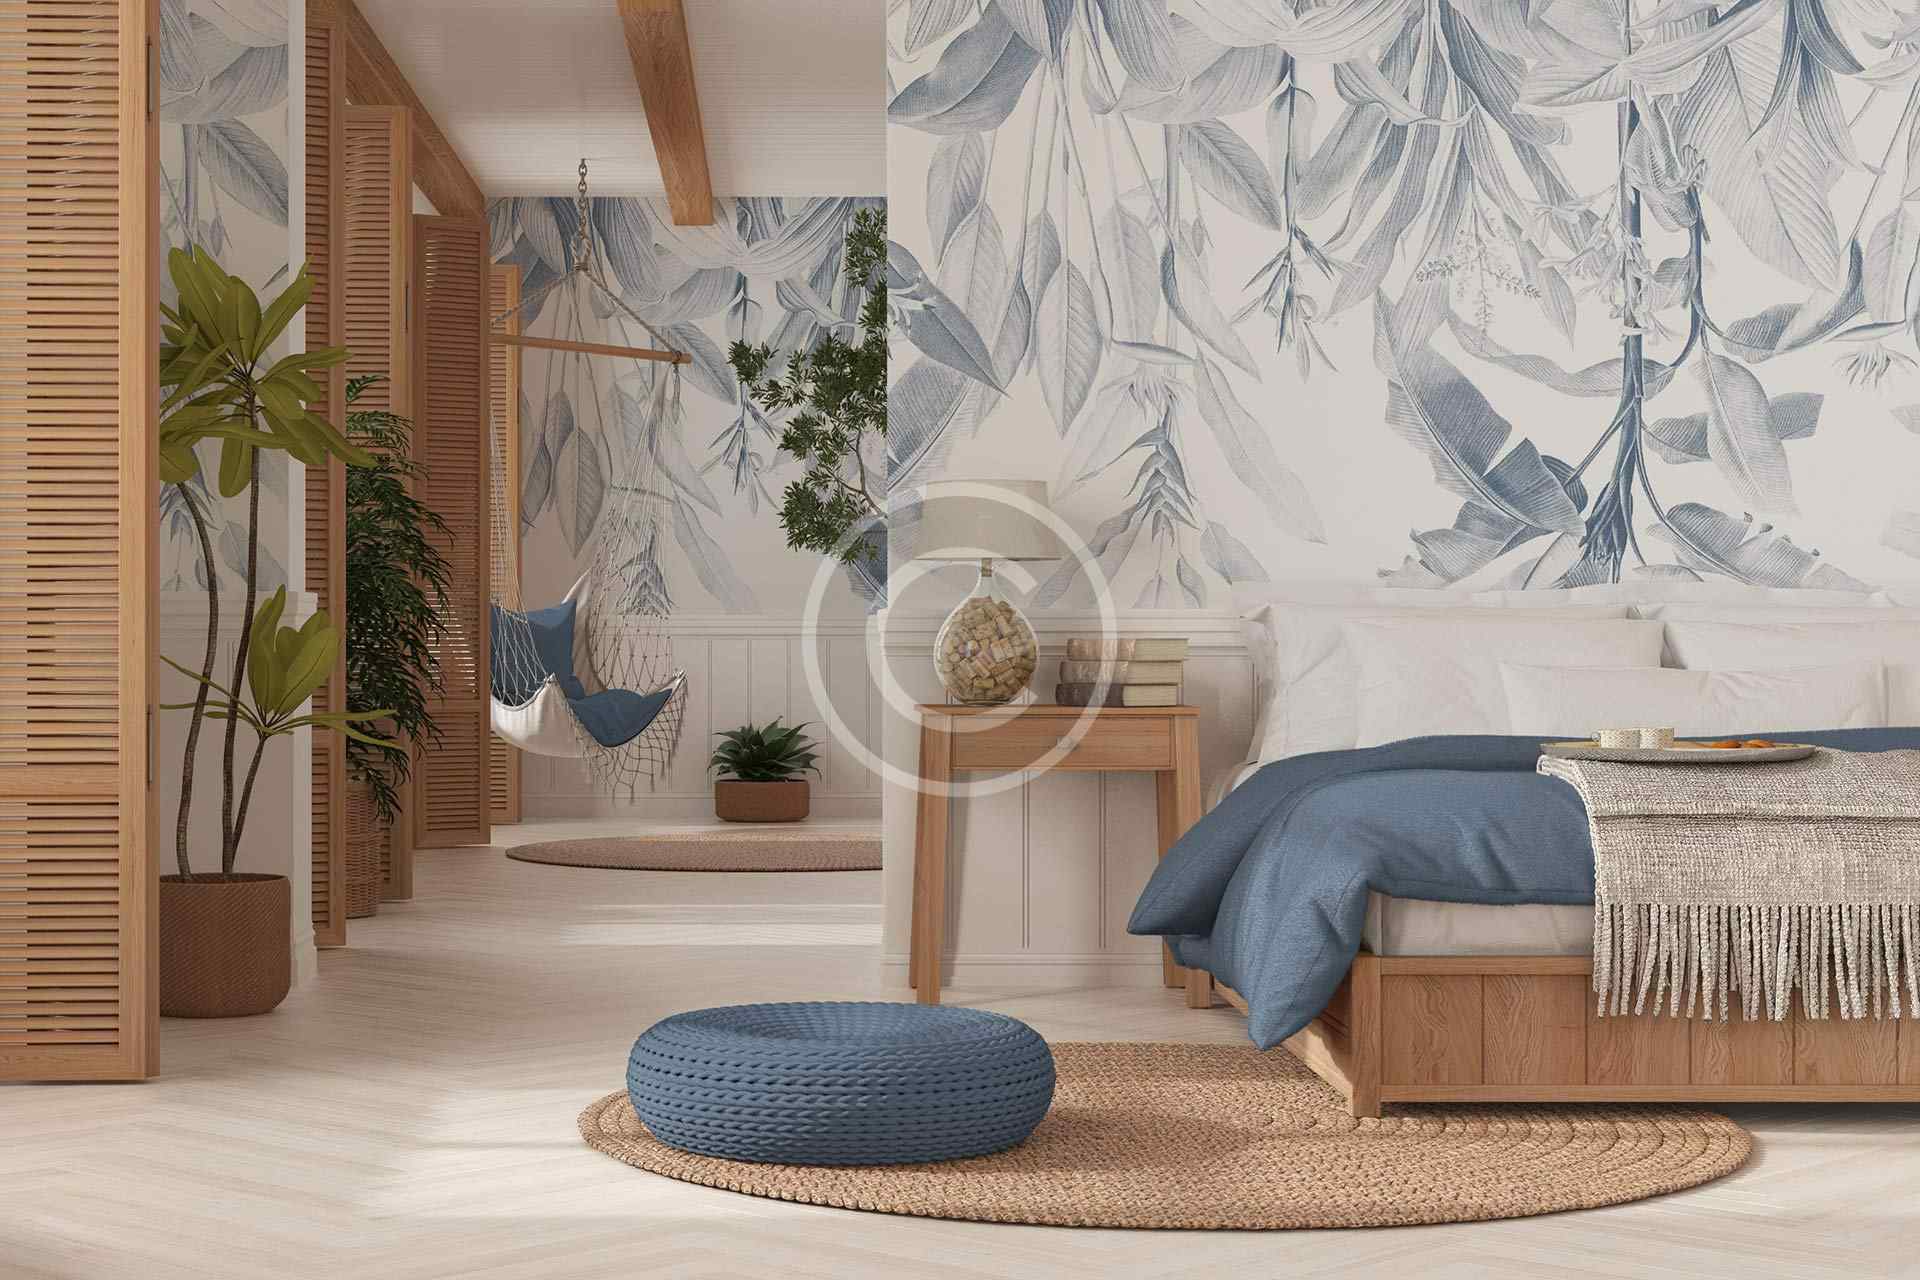 Marine bedroom design